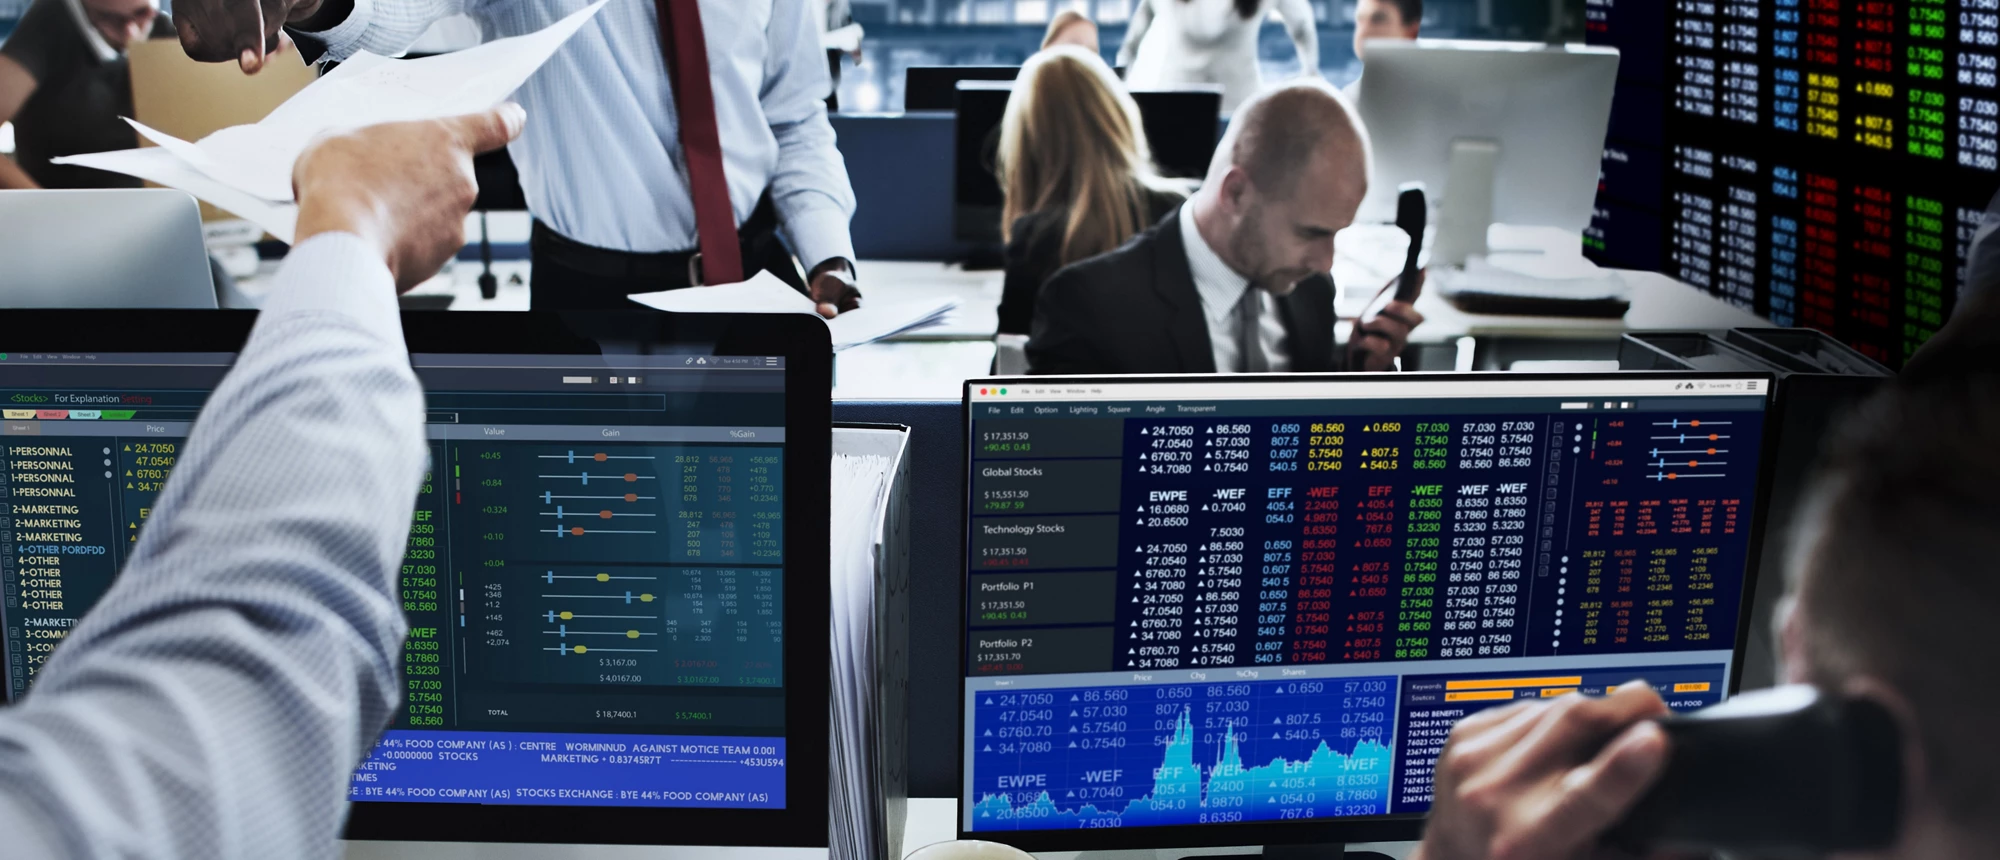 Finance Stock Exchange Concept. ©Shutterstock.